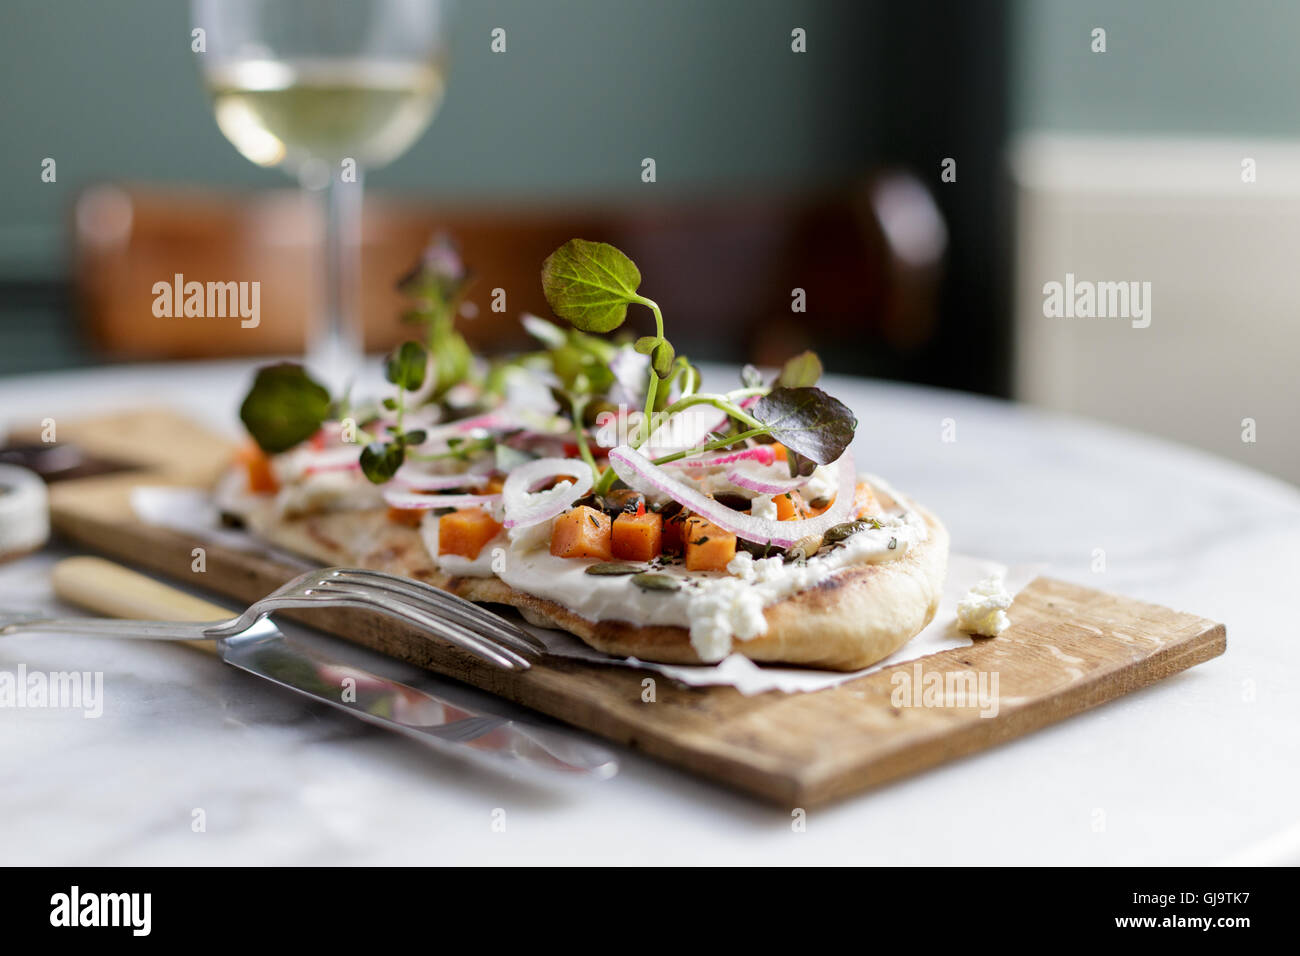 Un pain plat ou salade de fromage de chèvre et pizzetta avec radis, l'oignon rouge, squash et feuilles de bébé Banque D'Images